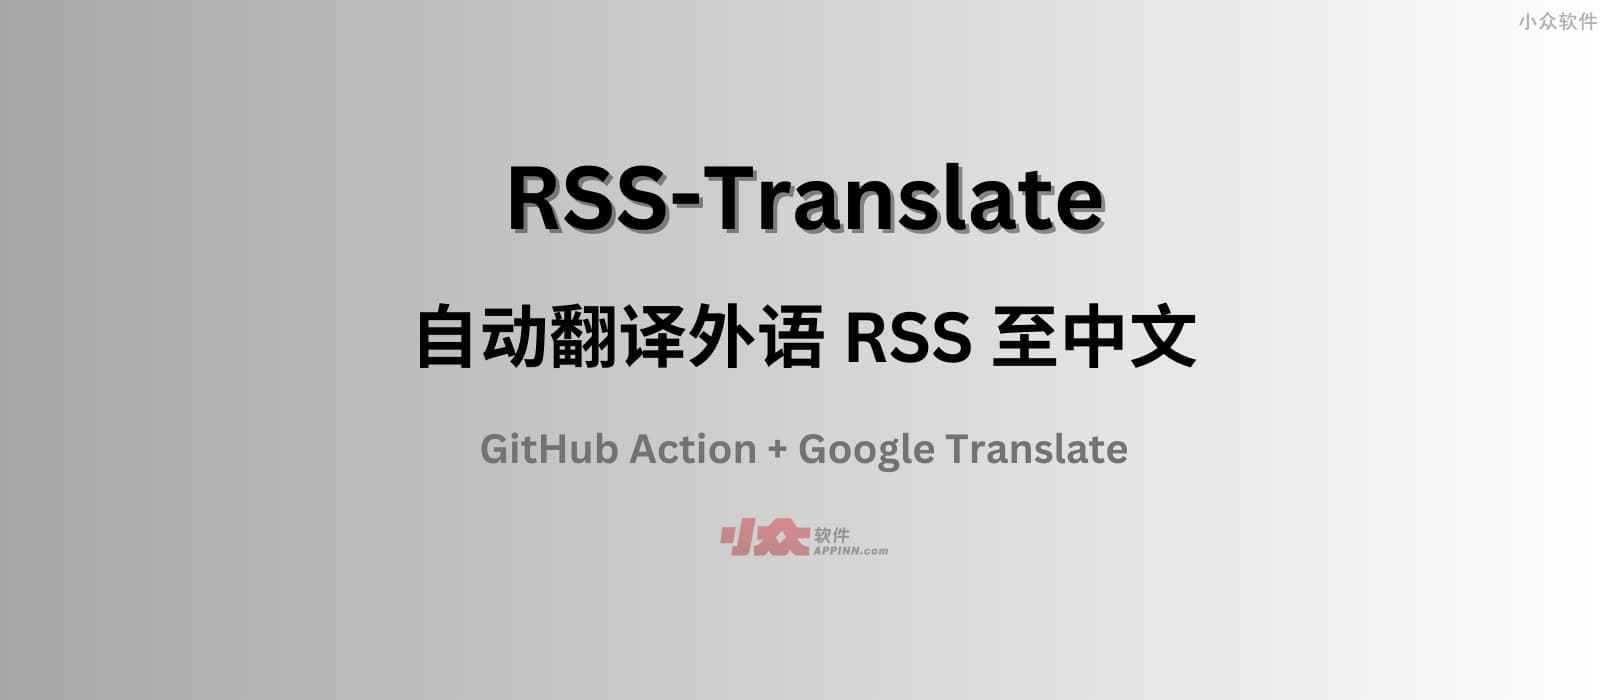 RSS-Translate - 自动翻译外语 RSS 至中文